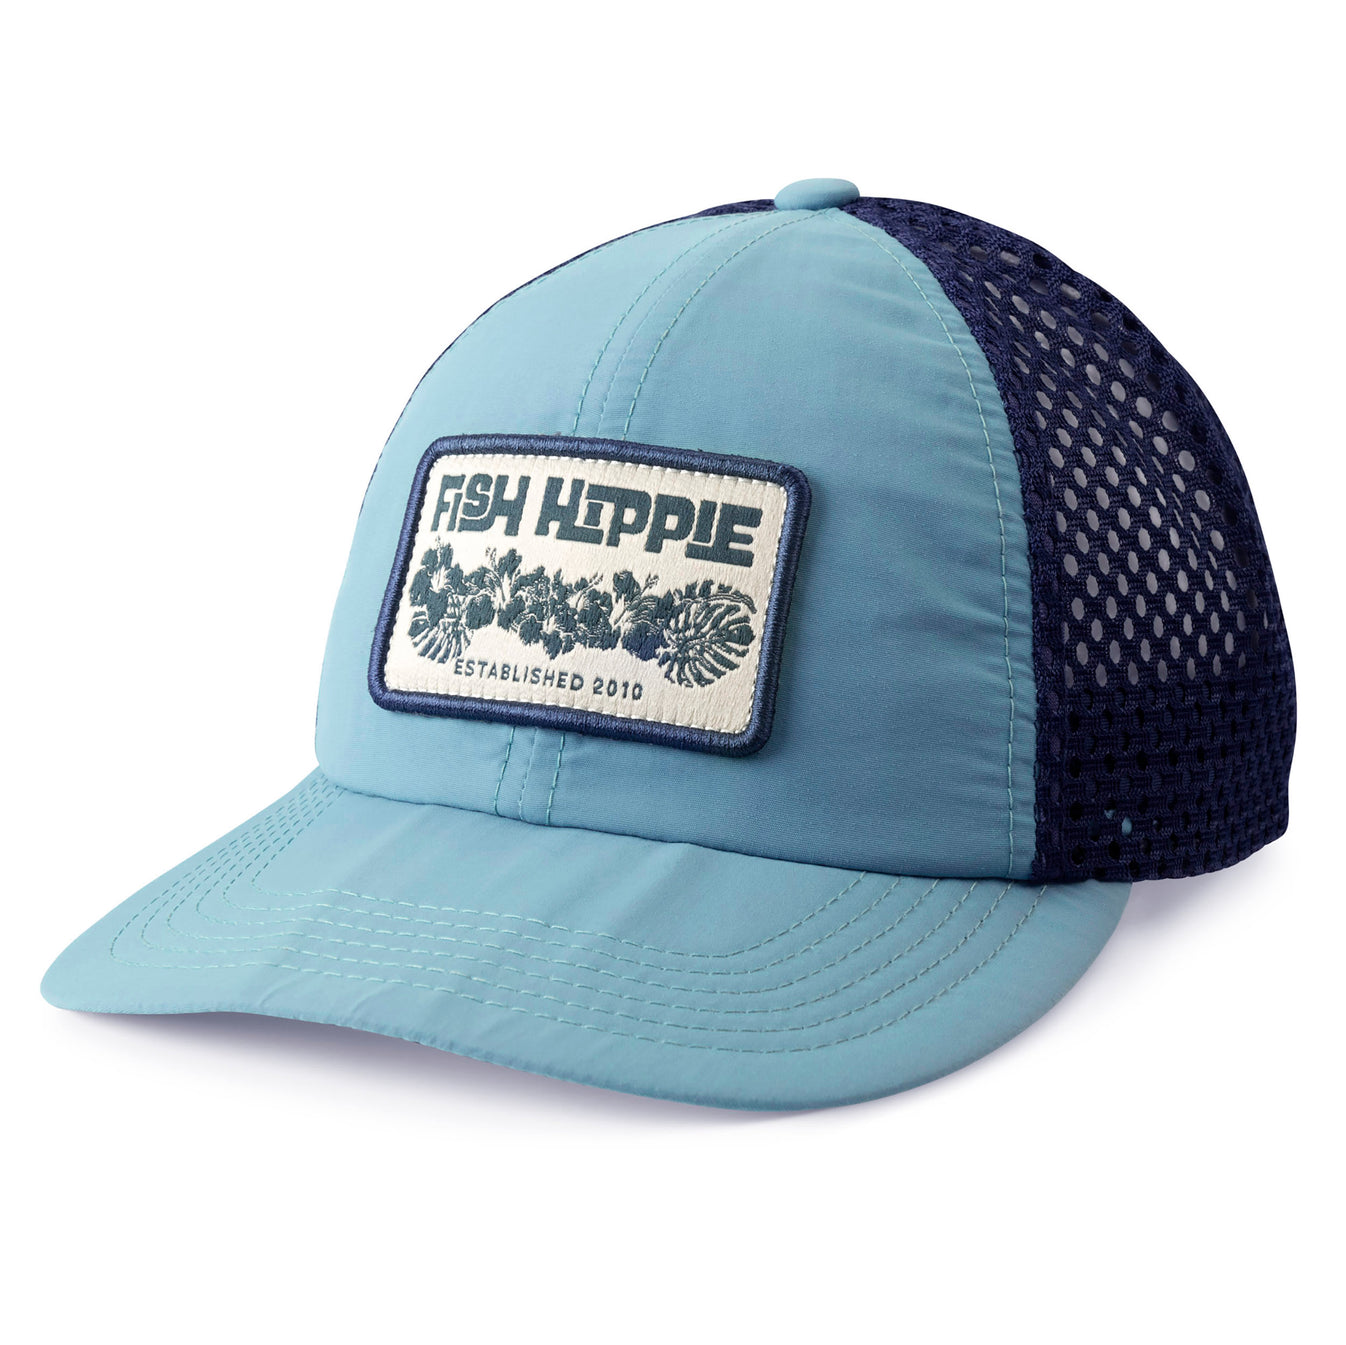 Fish Hippie Landed Trucker Hat